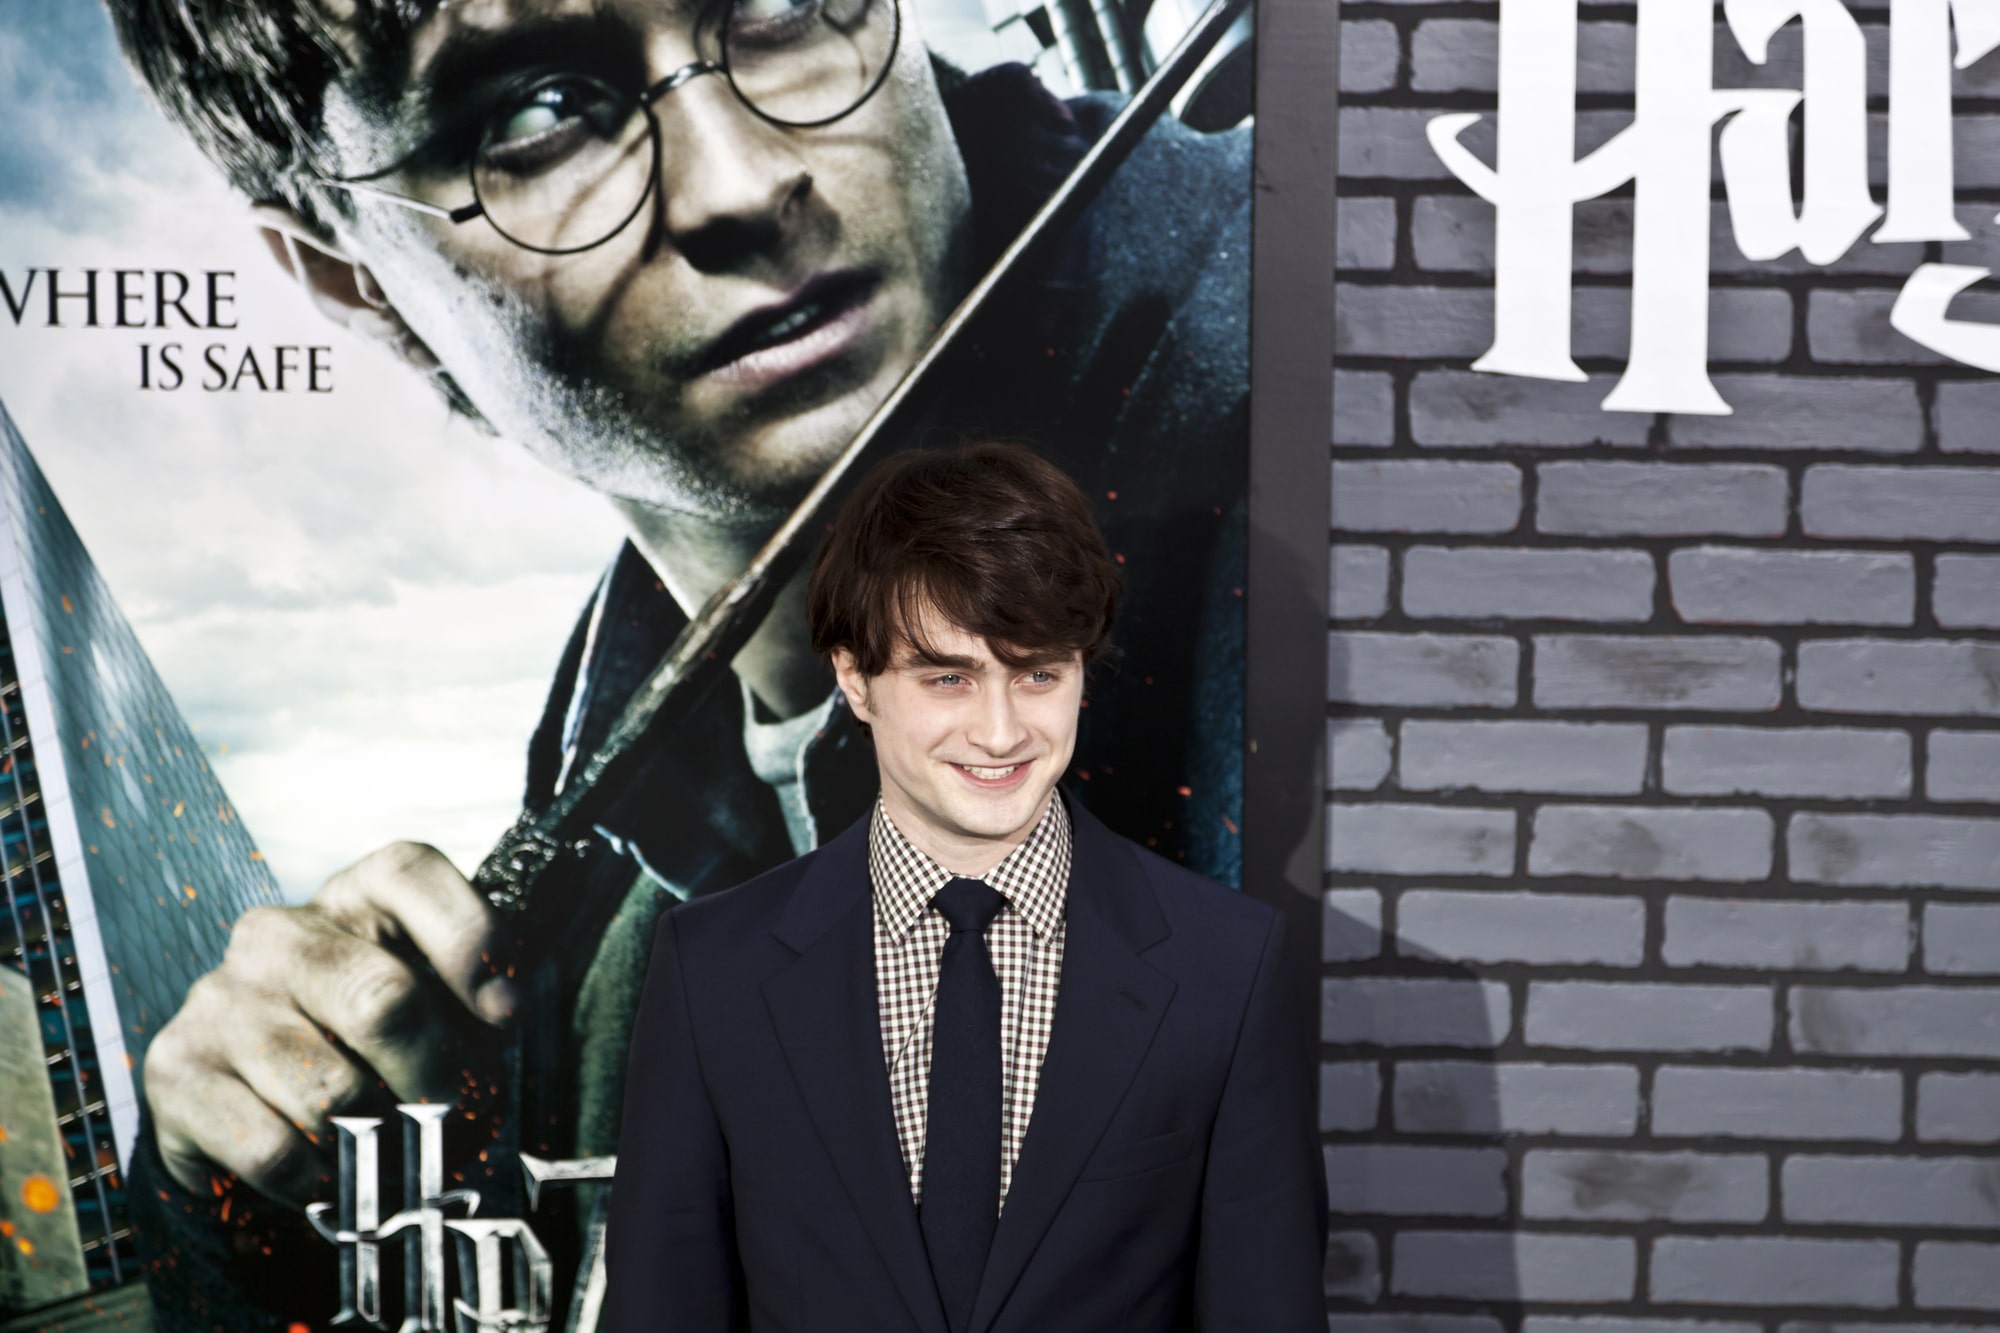 Продюсер Дэвид Хейман вспомнил трогательную сцену из «Гарри Поттера» в честь 20-летия франшизы